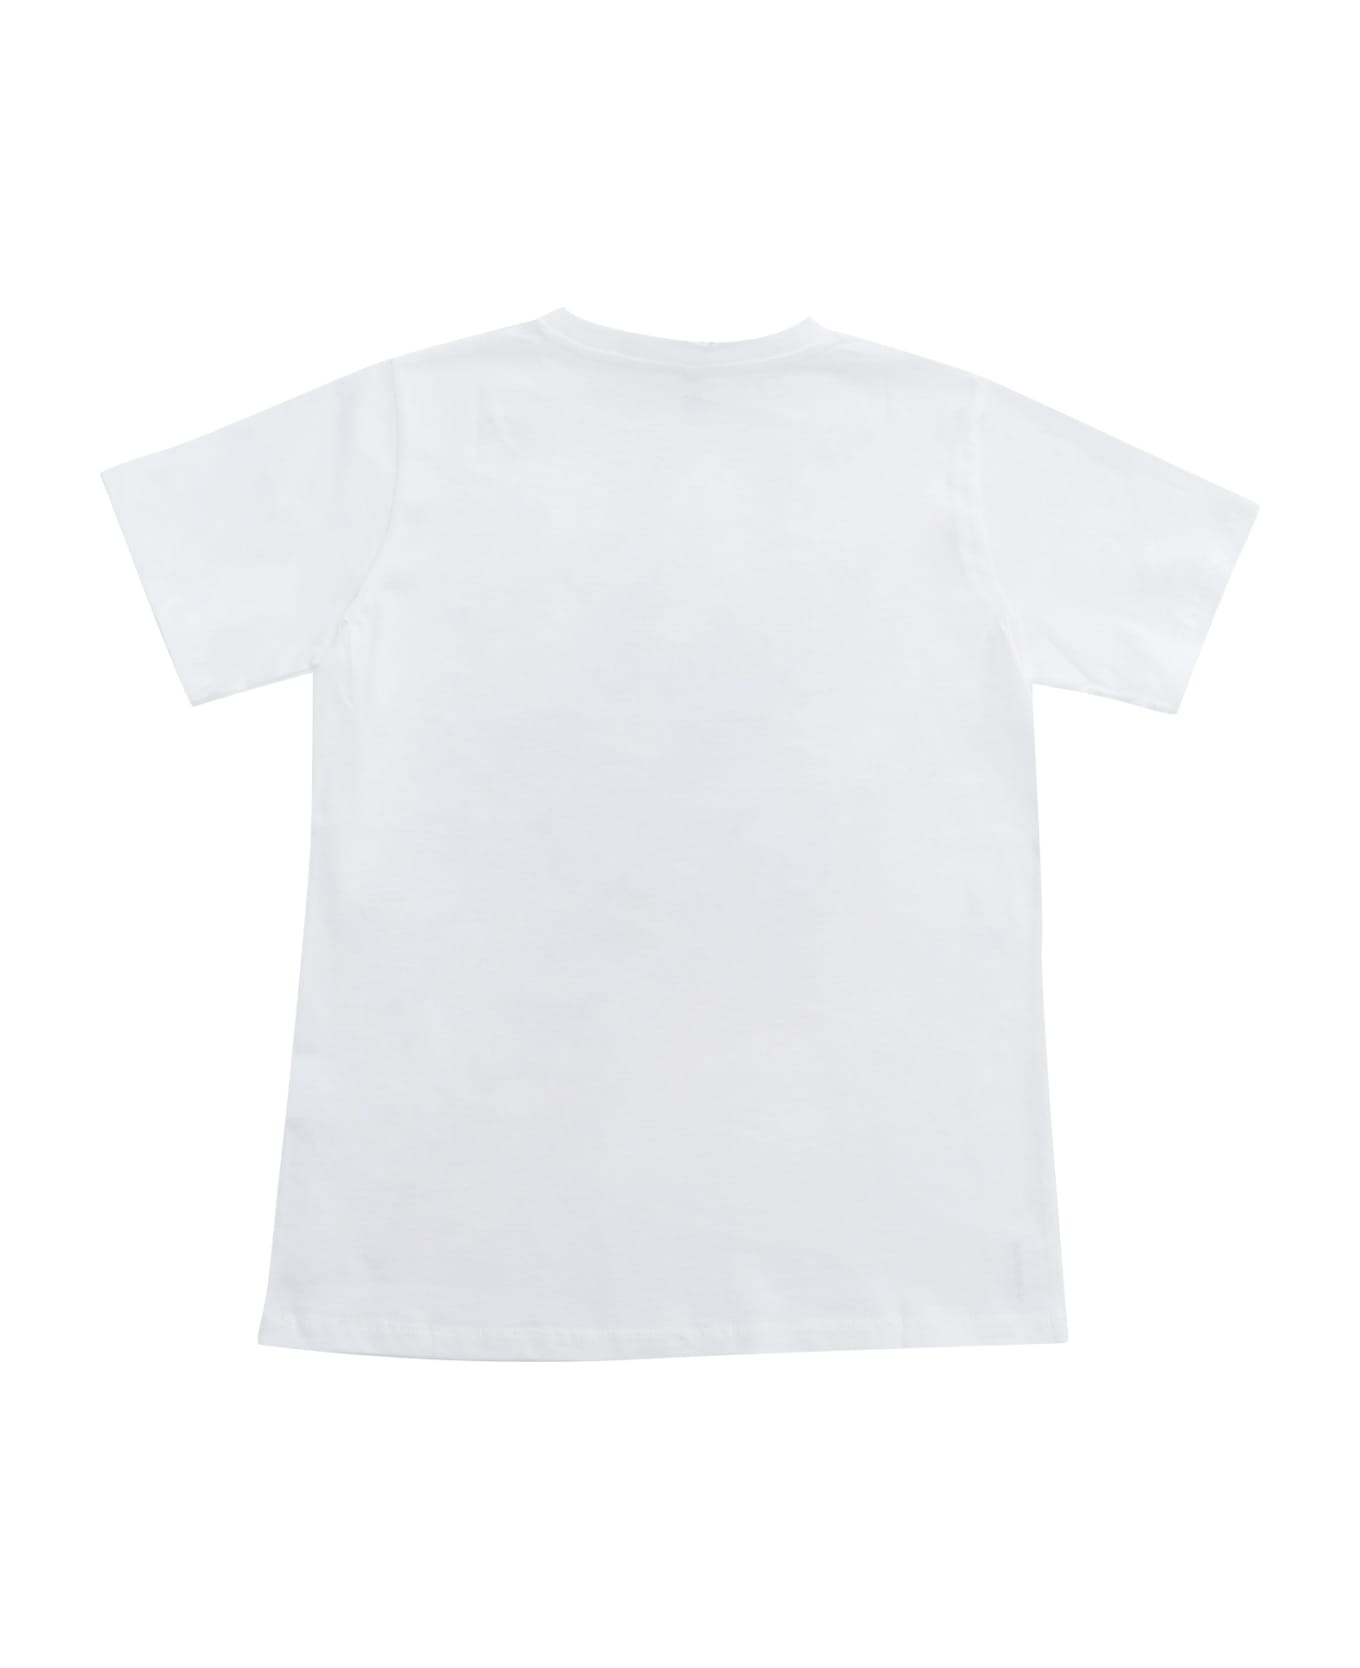 Stella McCartney Kids White T-shirt - WHITE